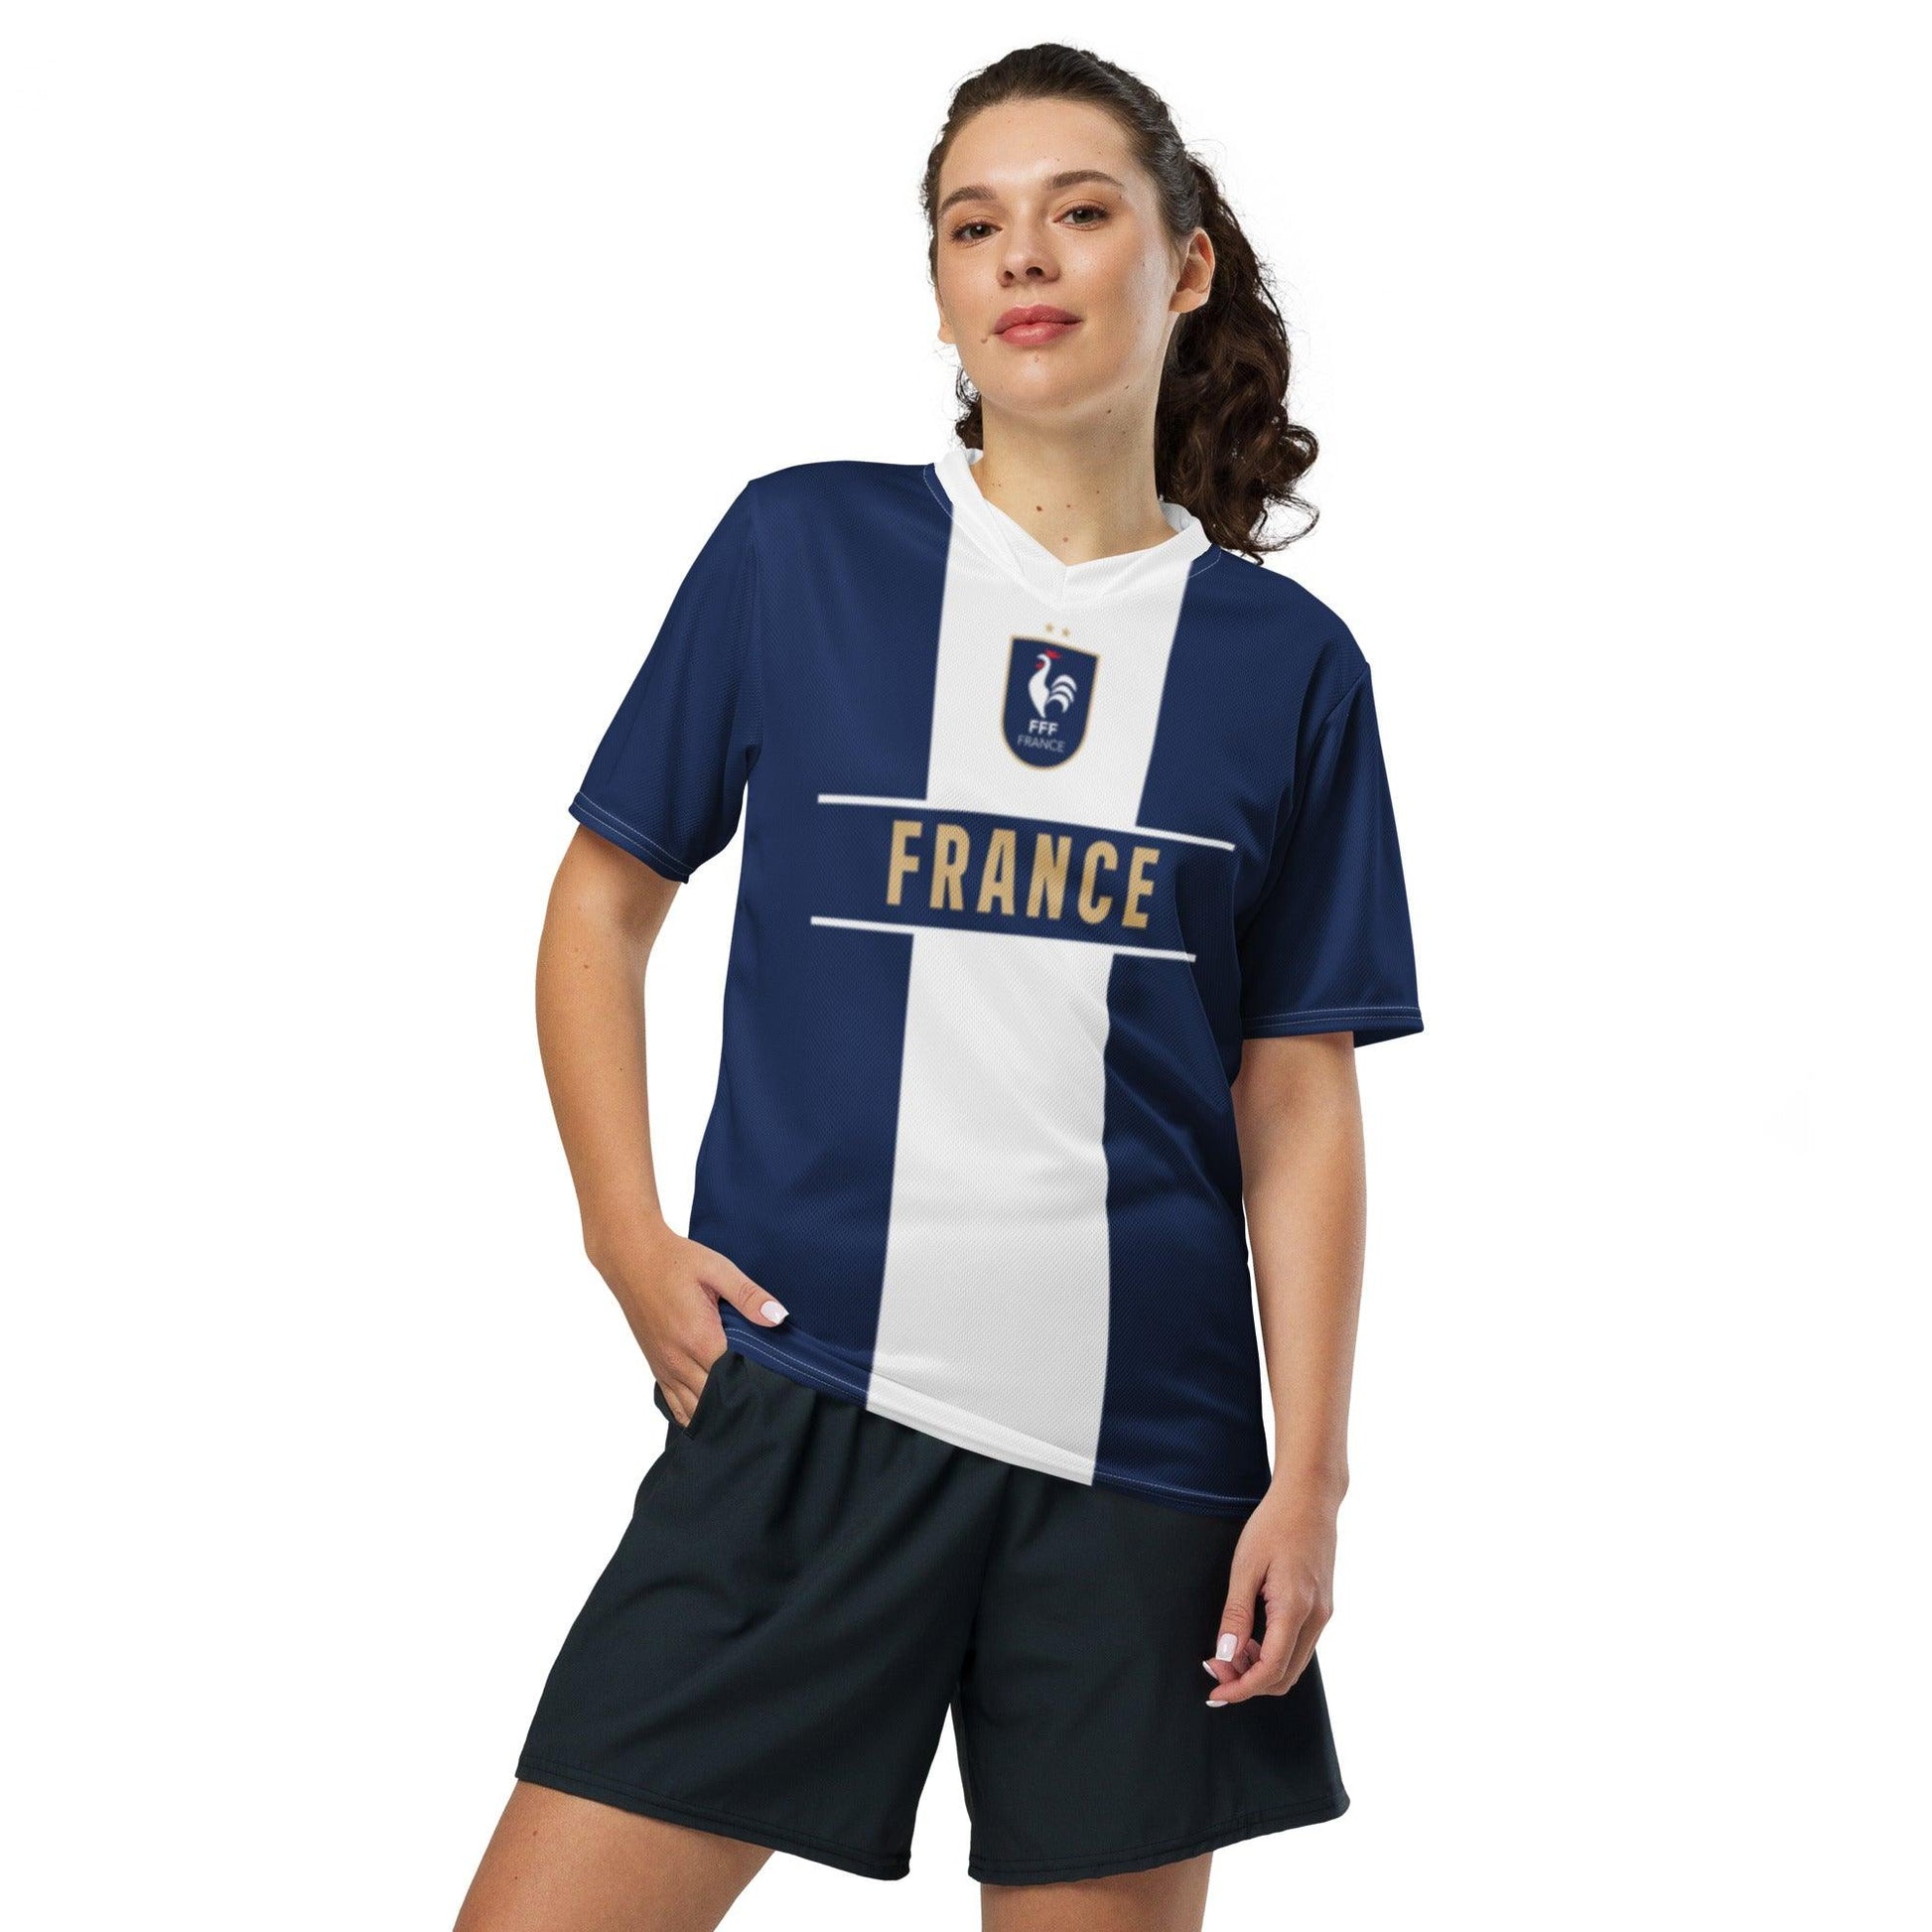 Blauw FFF Voetbalshirt Frankrijk - Uniek ontwerp